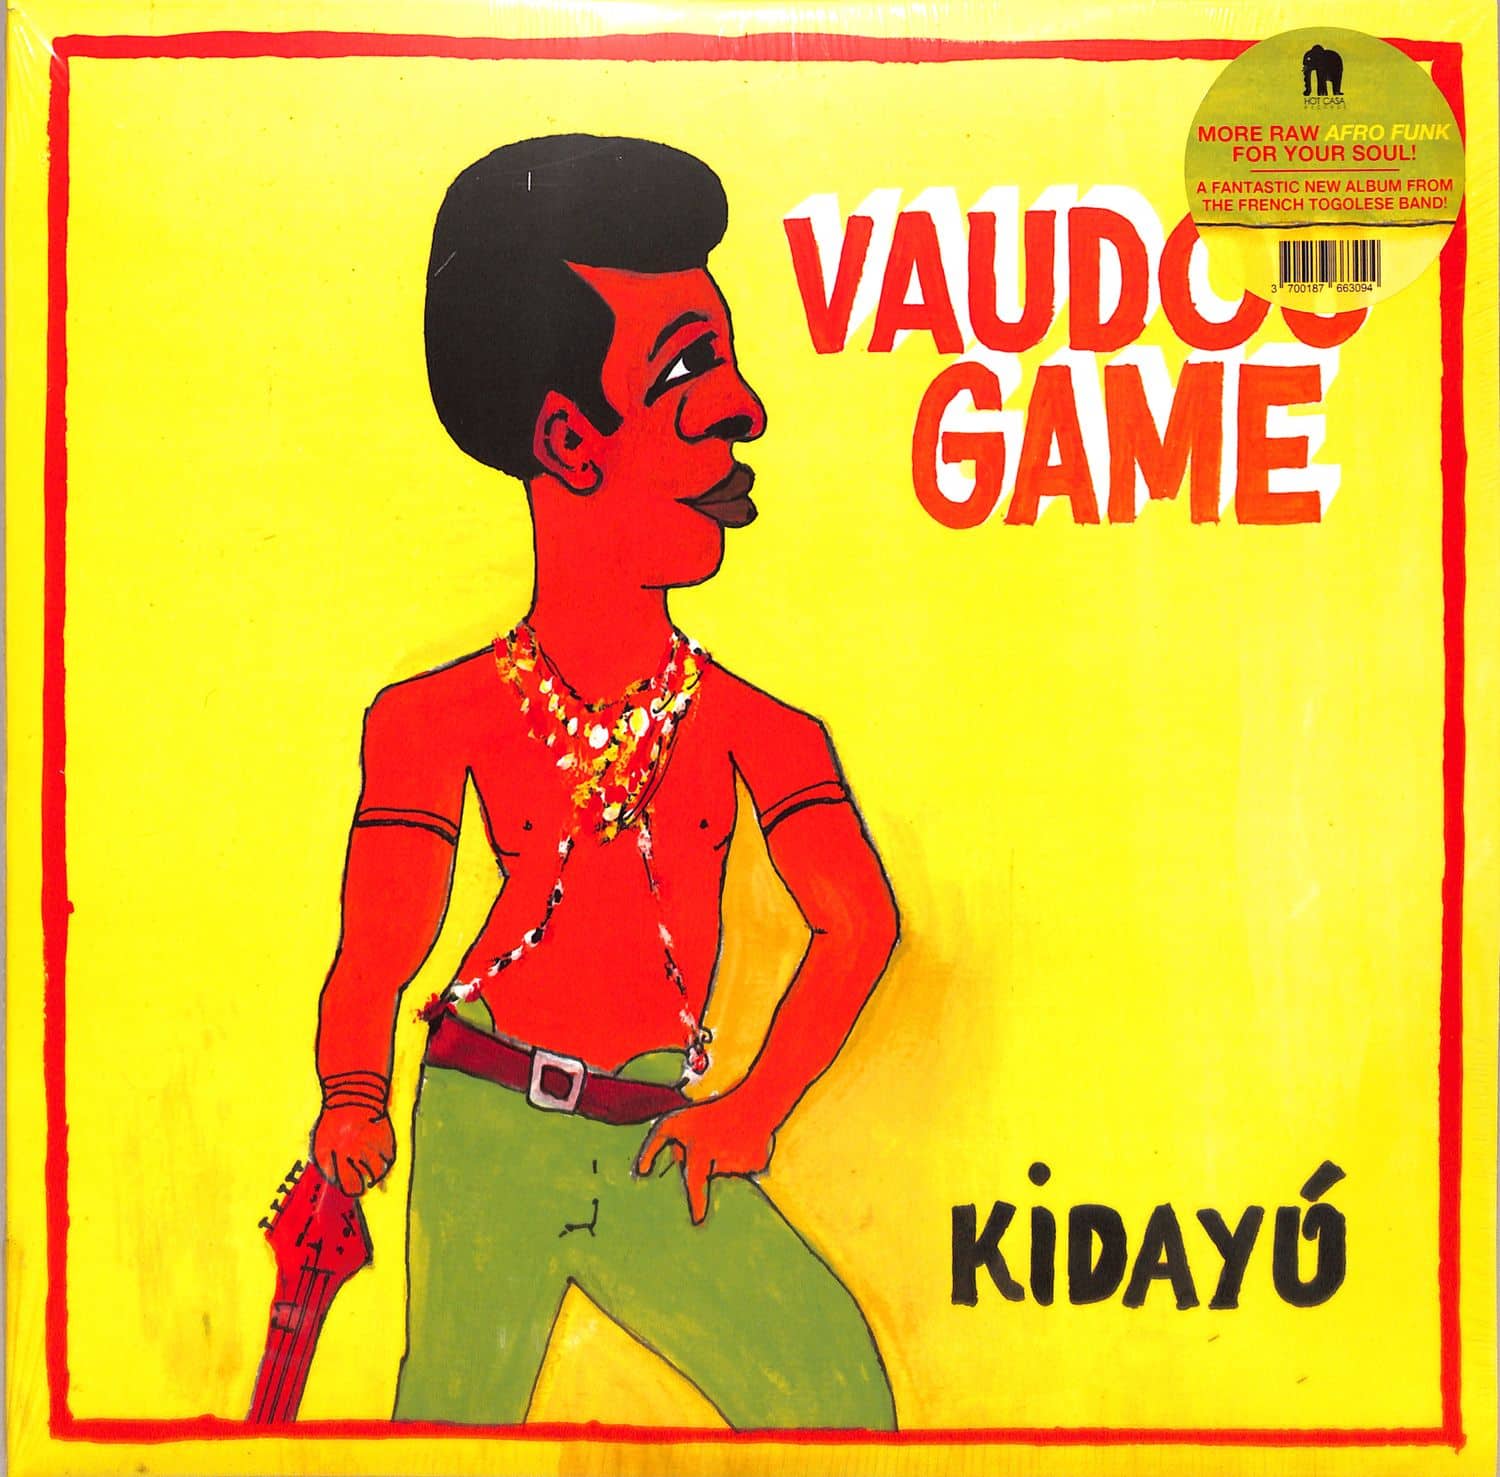 Vaudou Game - KIDAYU 